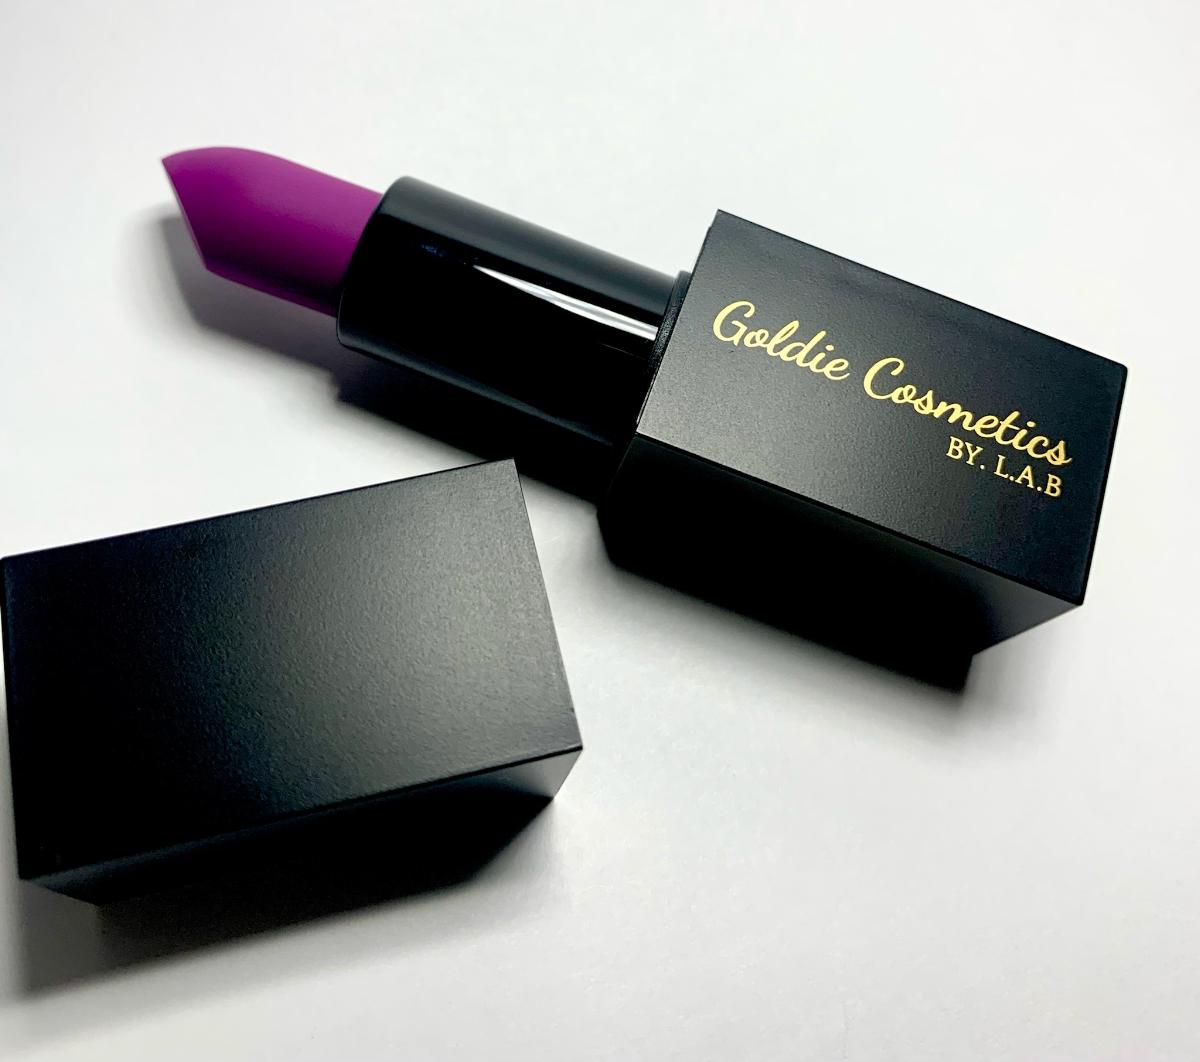 Purple Daze Lipstick